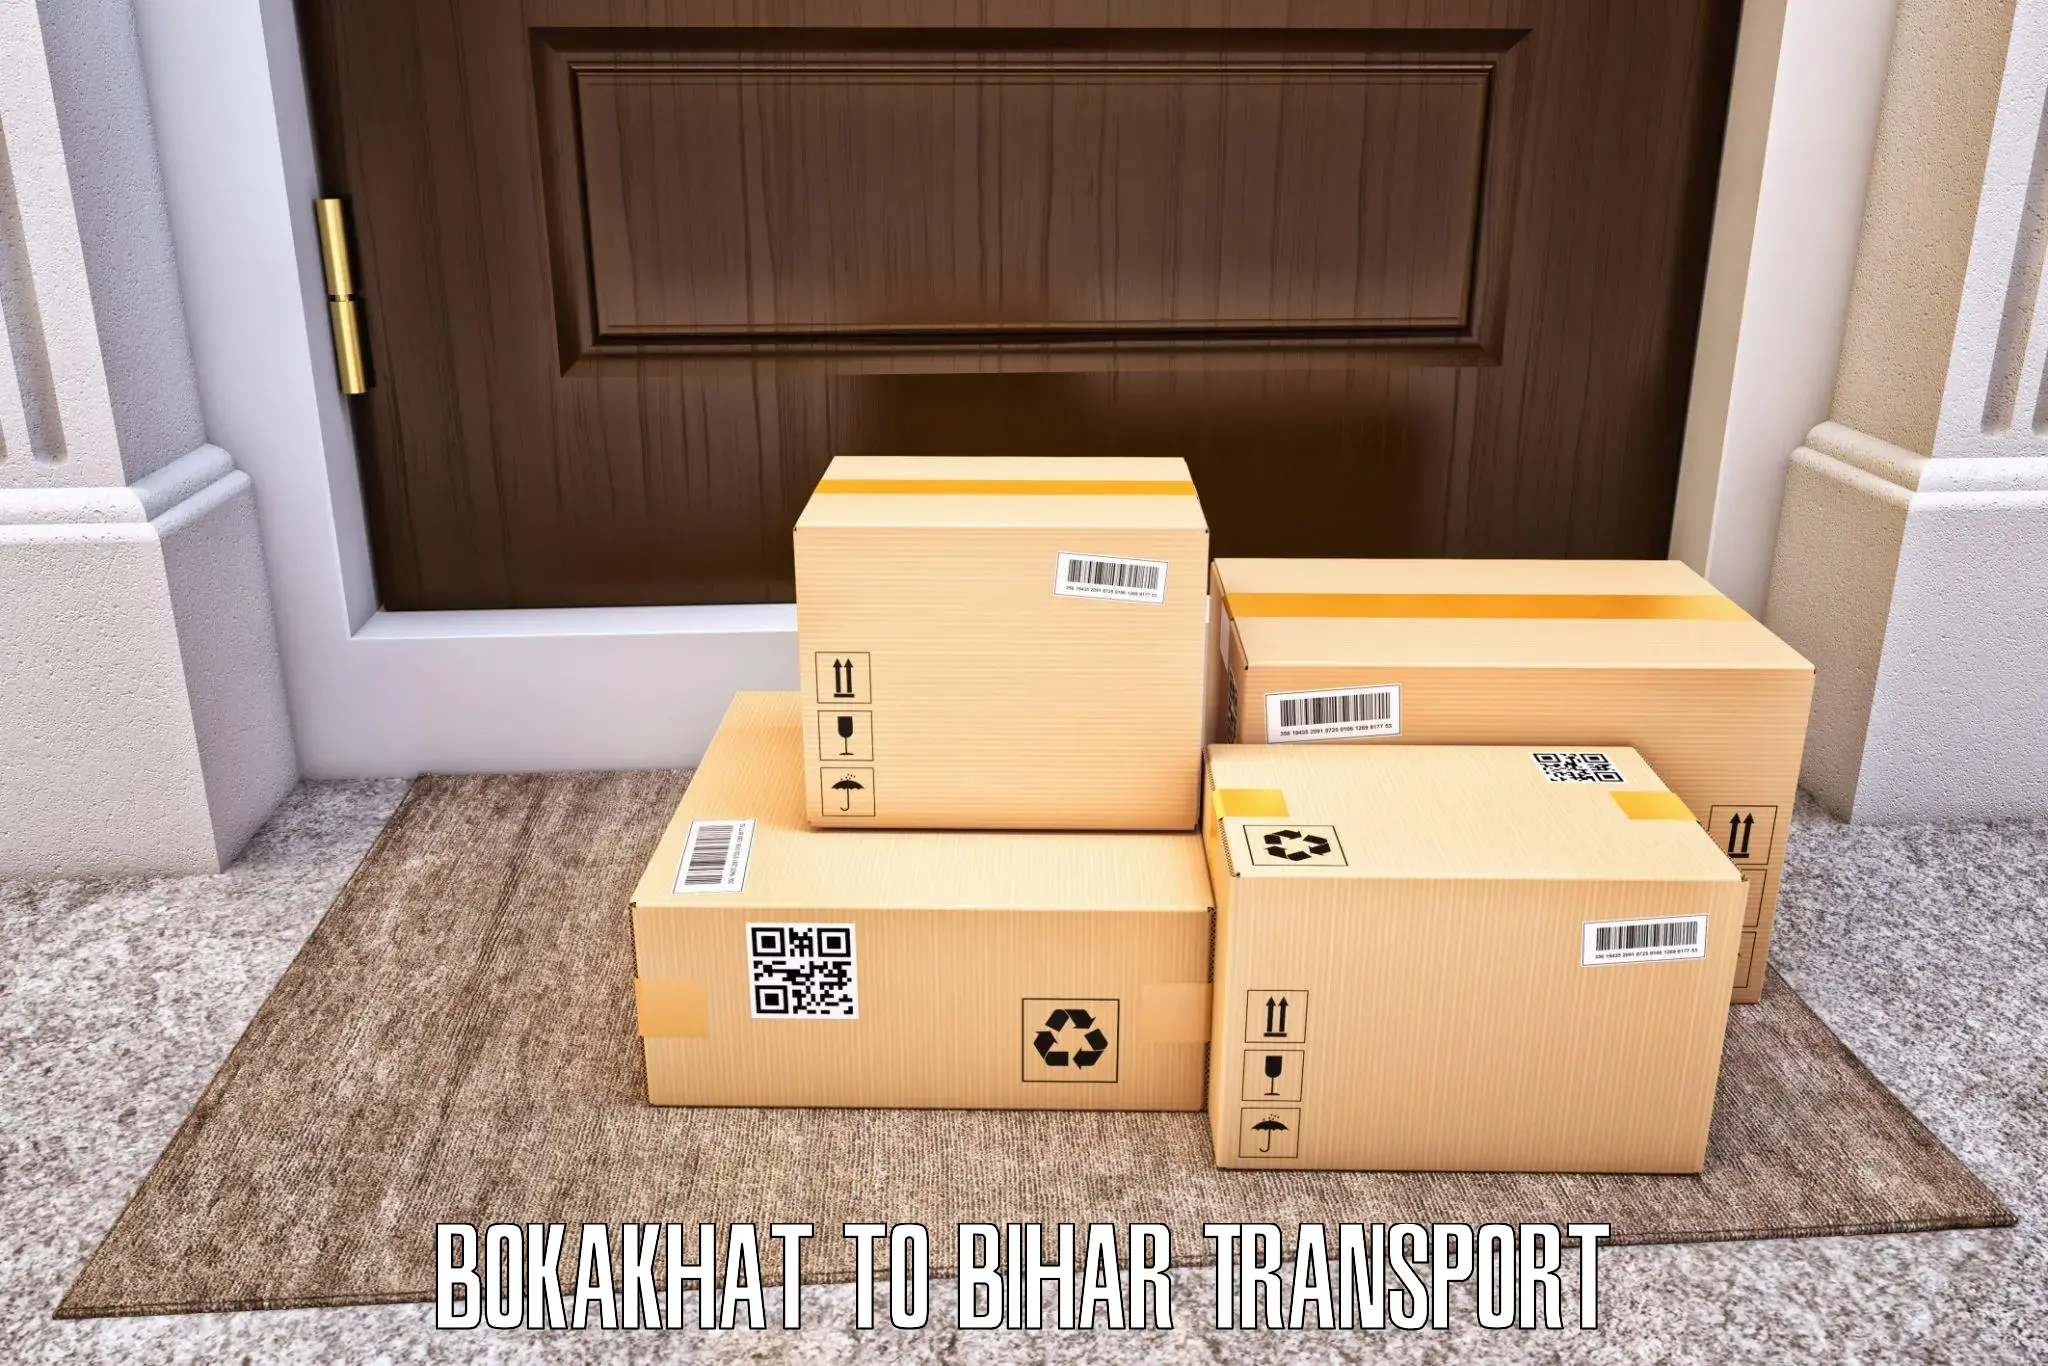 Luggage transport services Bokakhat to Bhorey